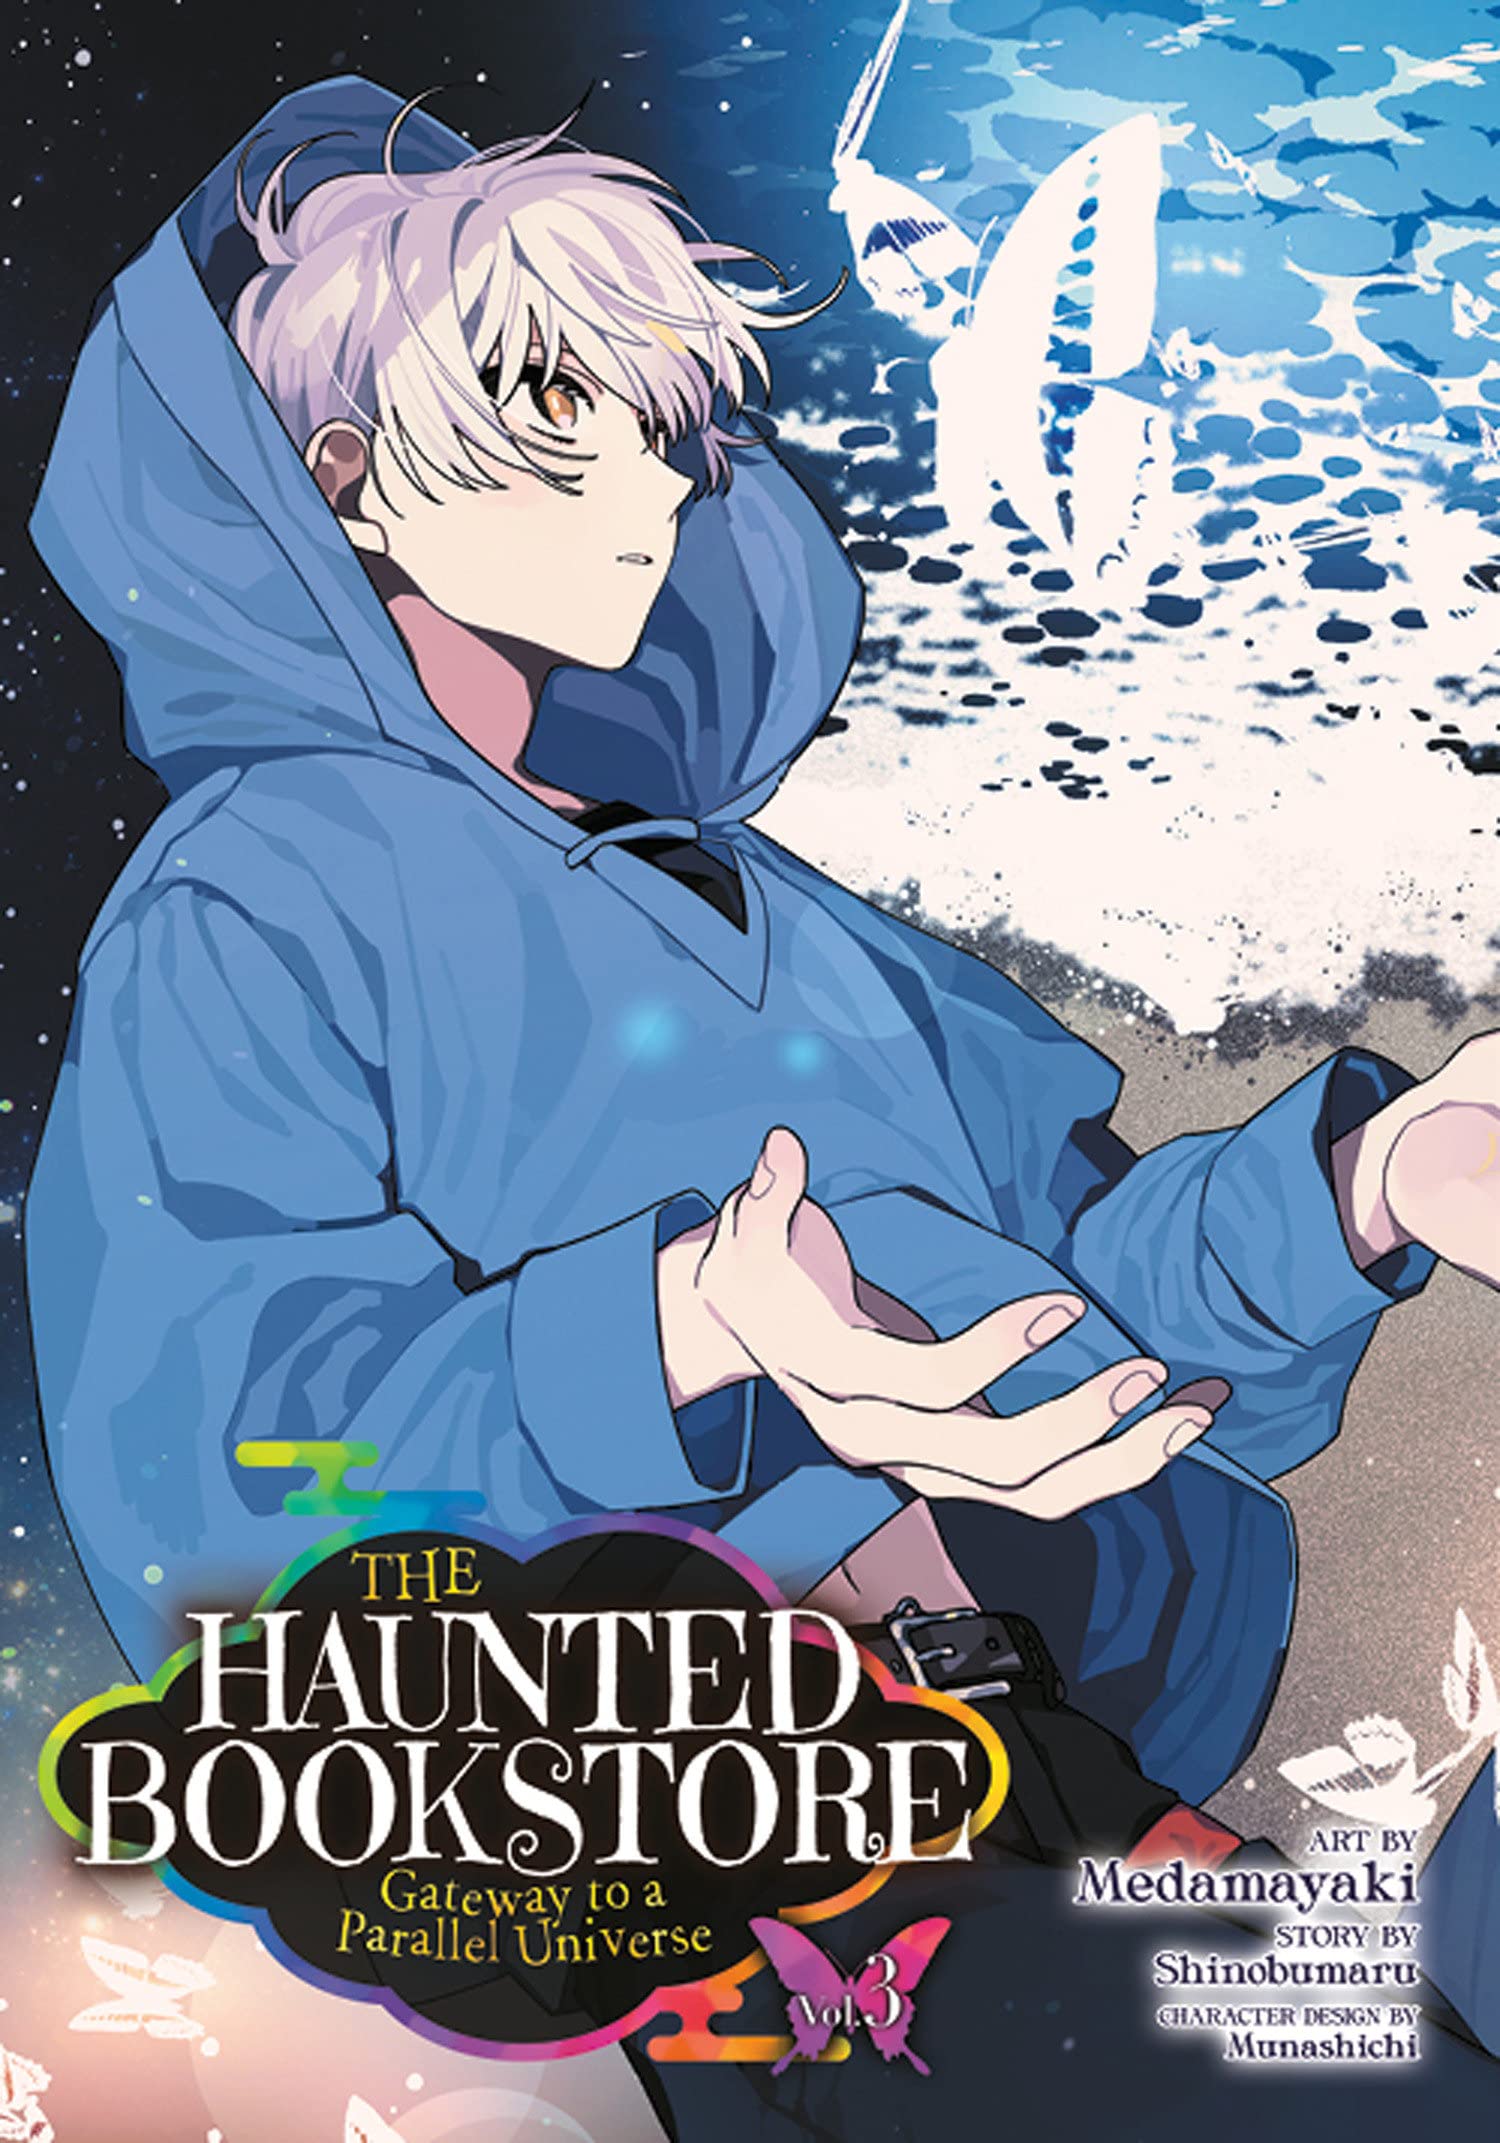 The Haunted Bookstore - Volume 3 | Shinobumaru